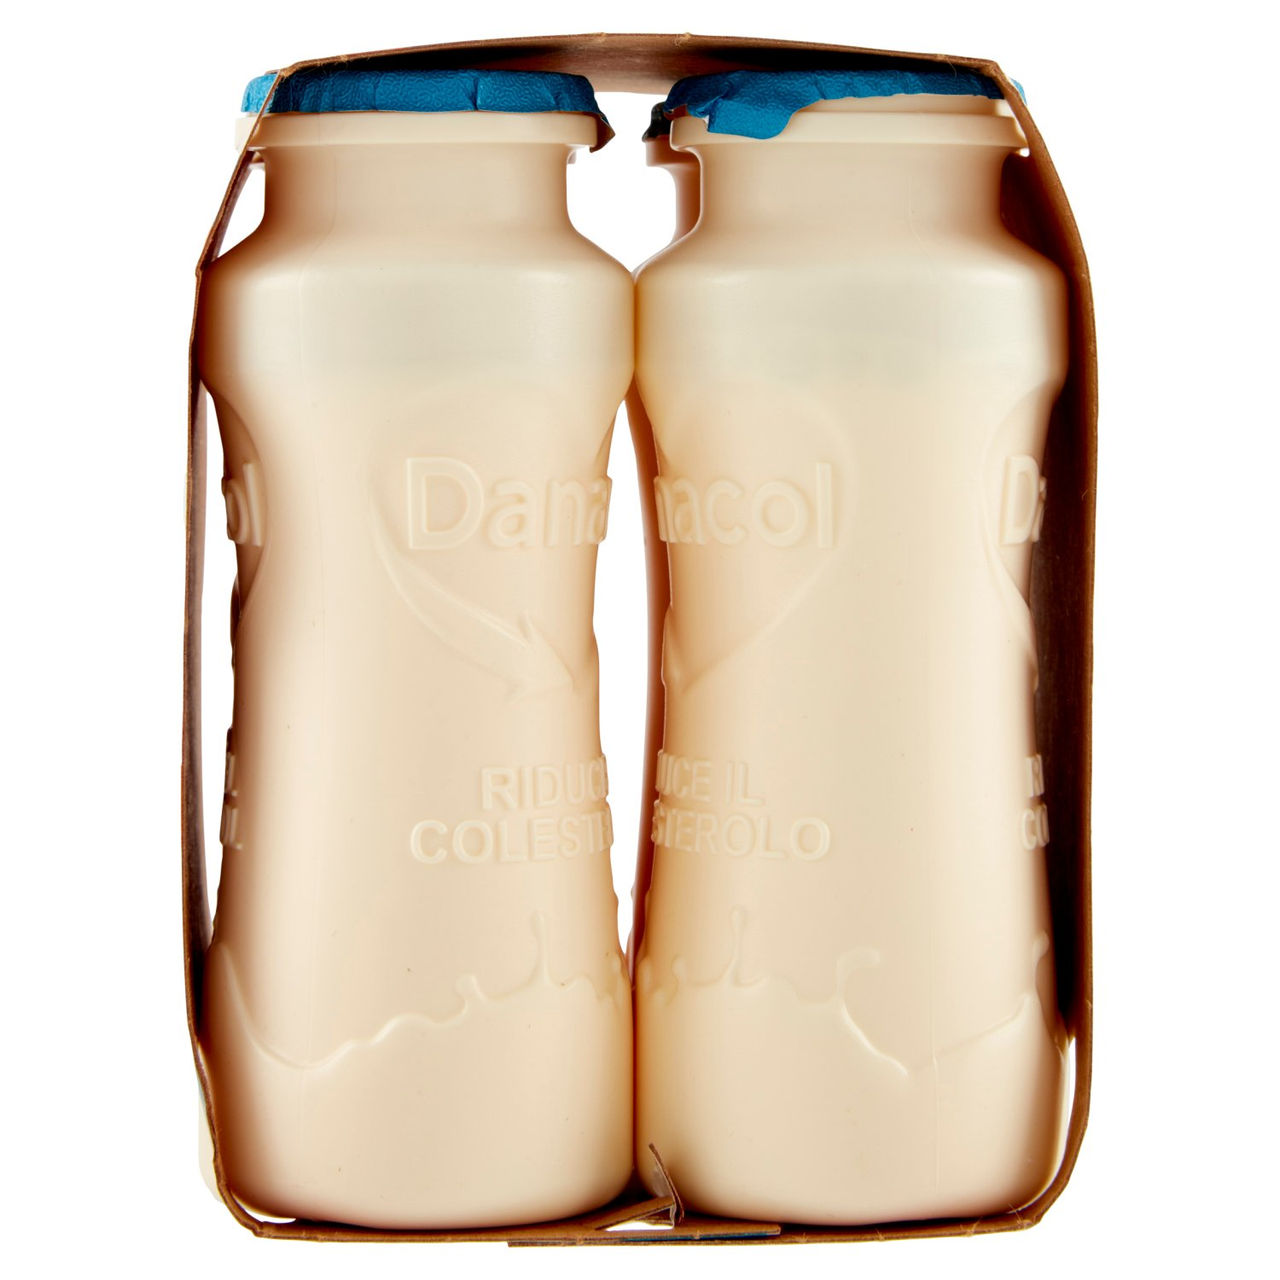 DANACOL Yogurt da bere, Riduce il Colesterolo grazie agli Steroli Vegetali, Bianco Naturale, 4x100g